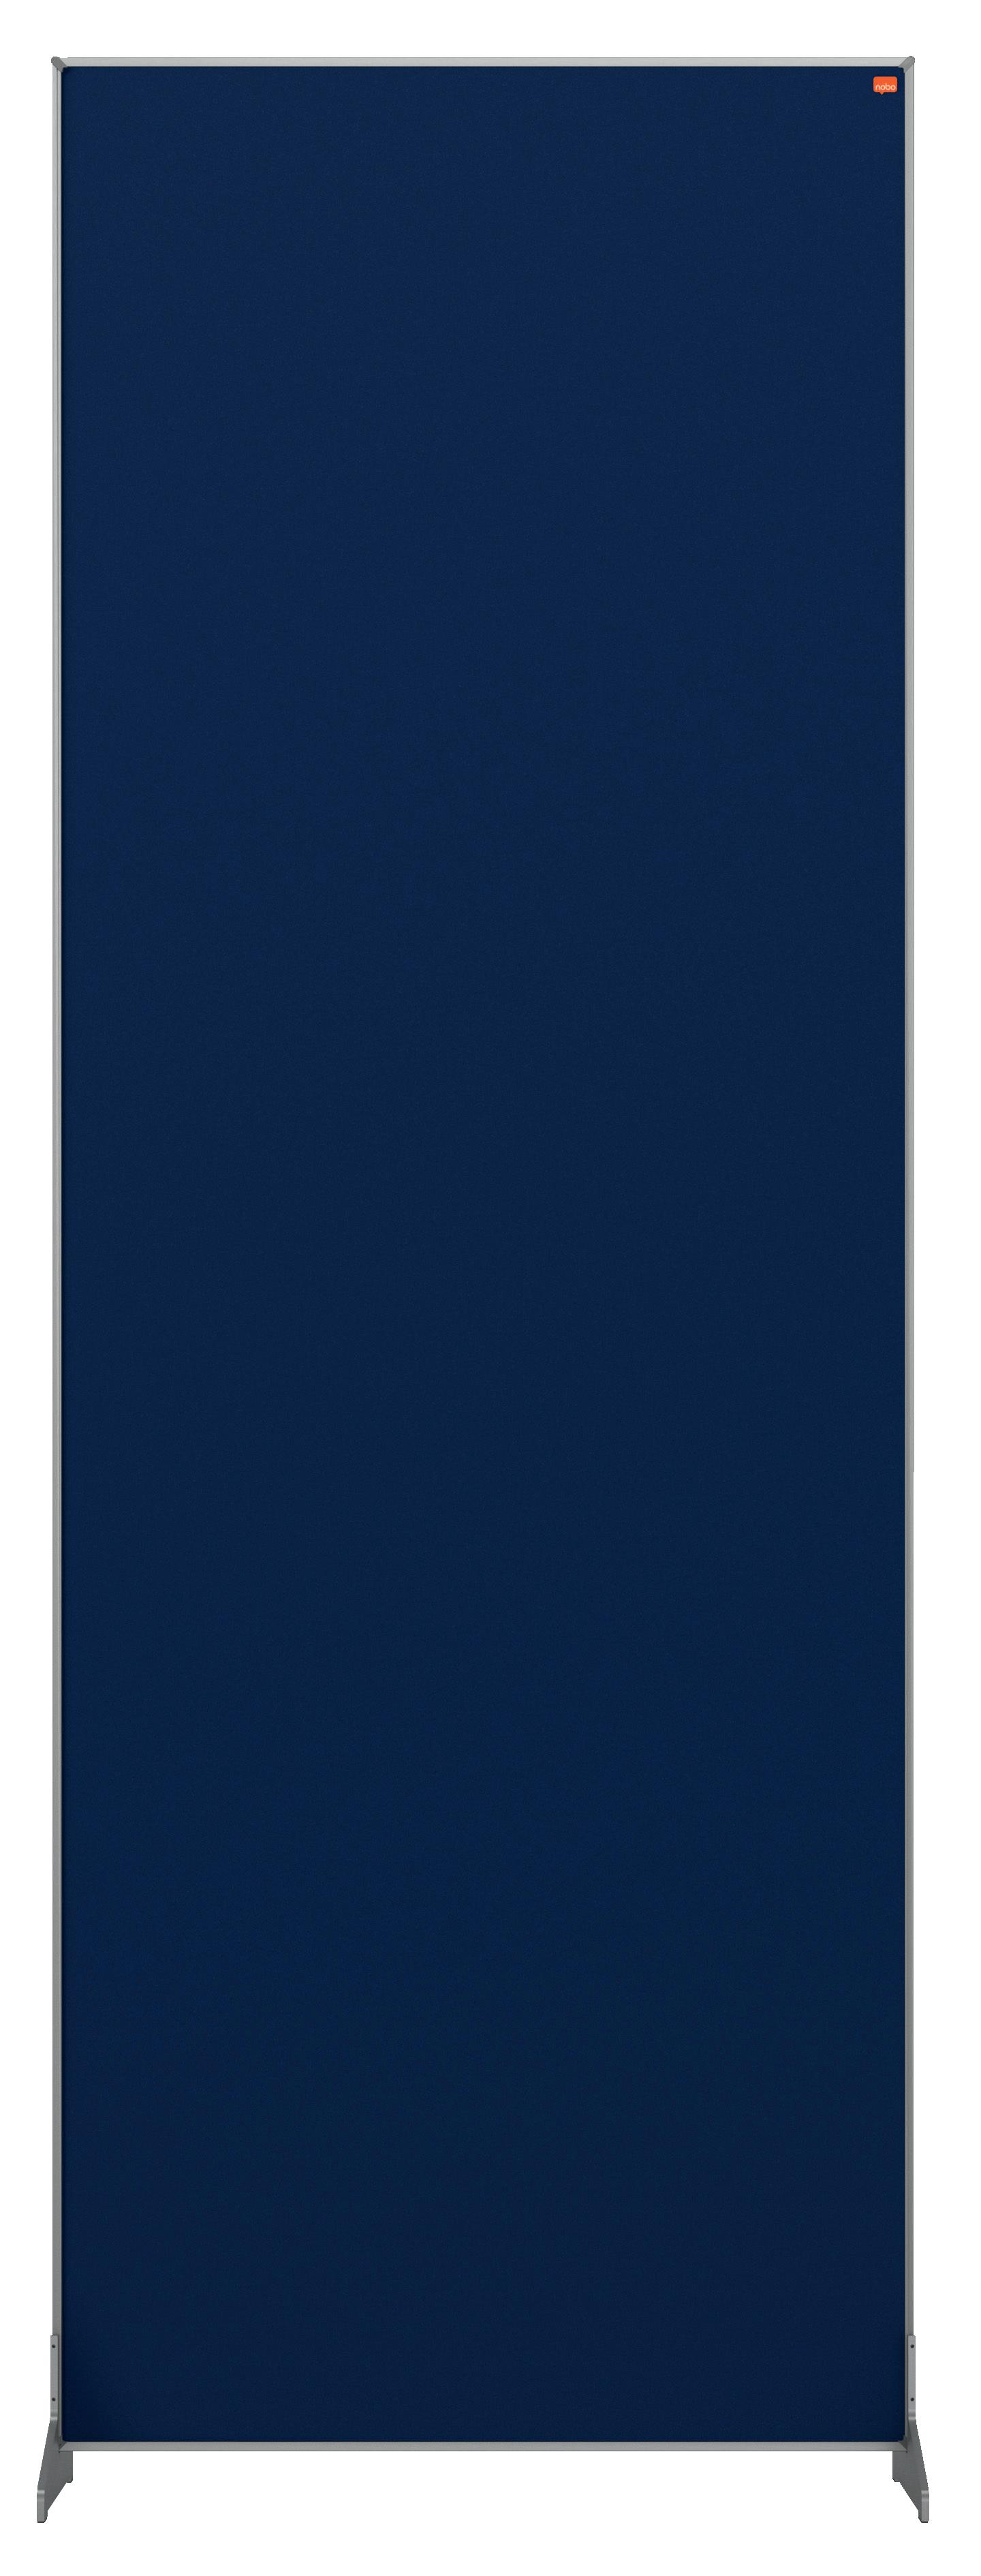 Nobo Impression Pro Floor Divider 600x1800mm Blue